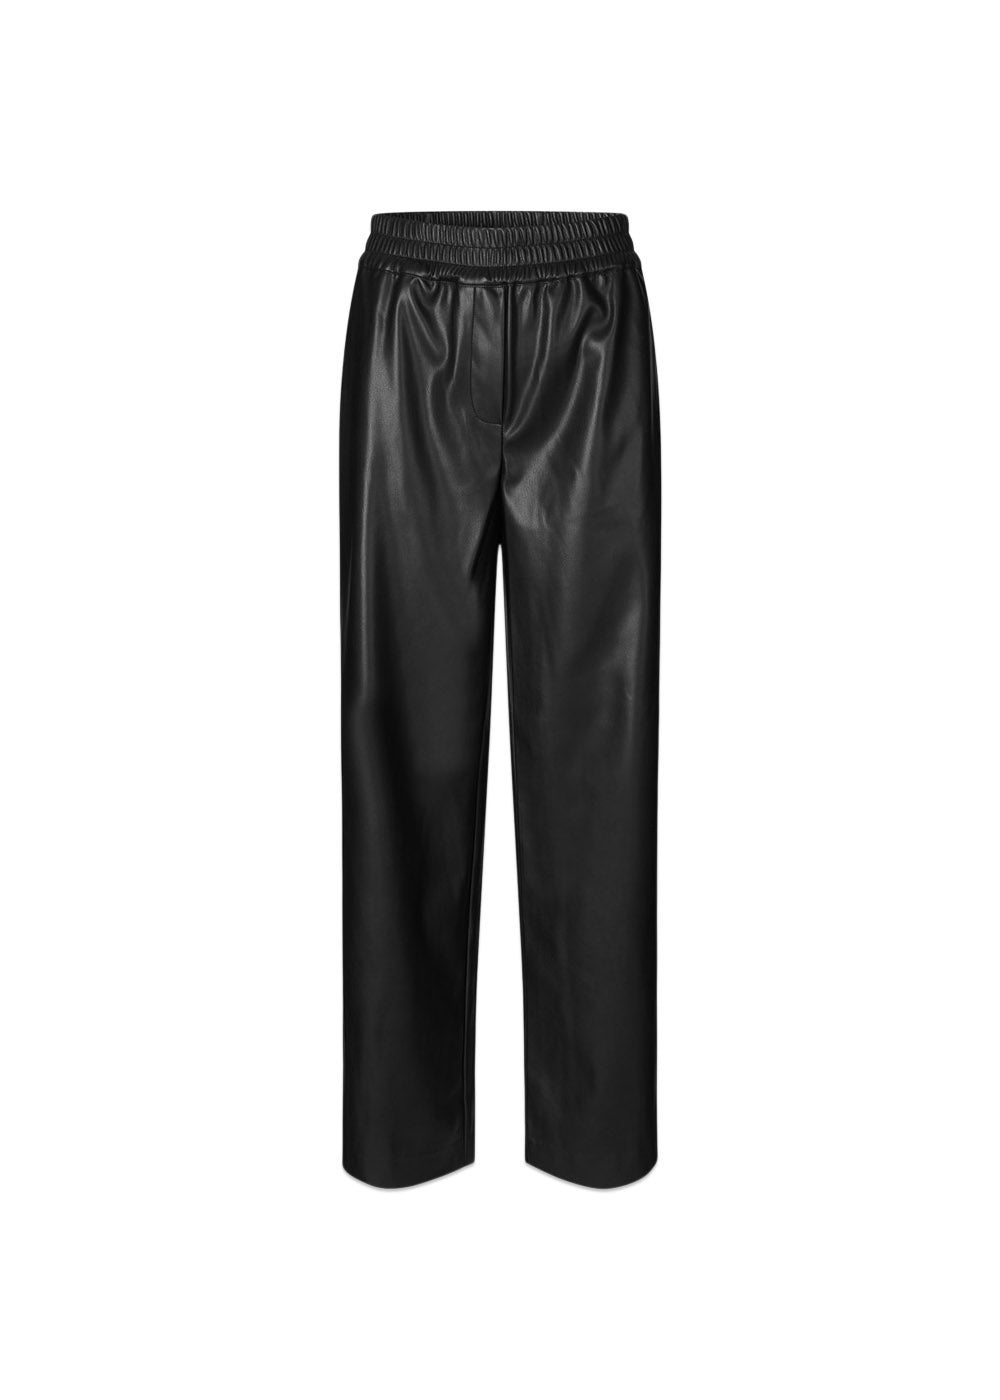 Modströms FaminaMD pants - Black. Køb bukser her.